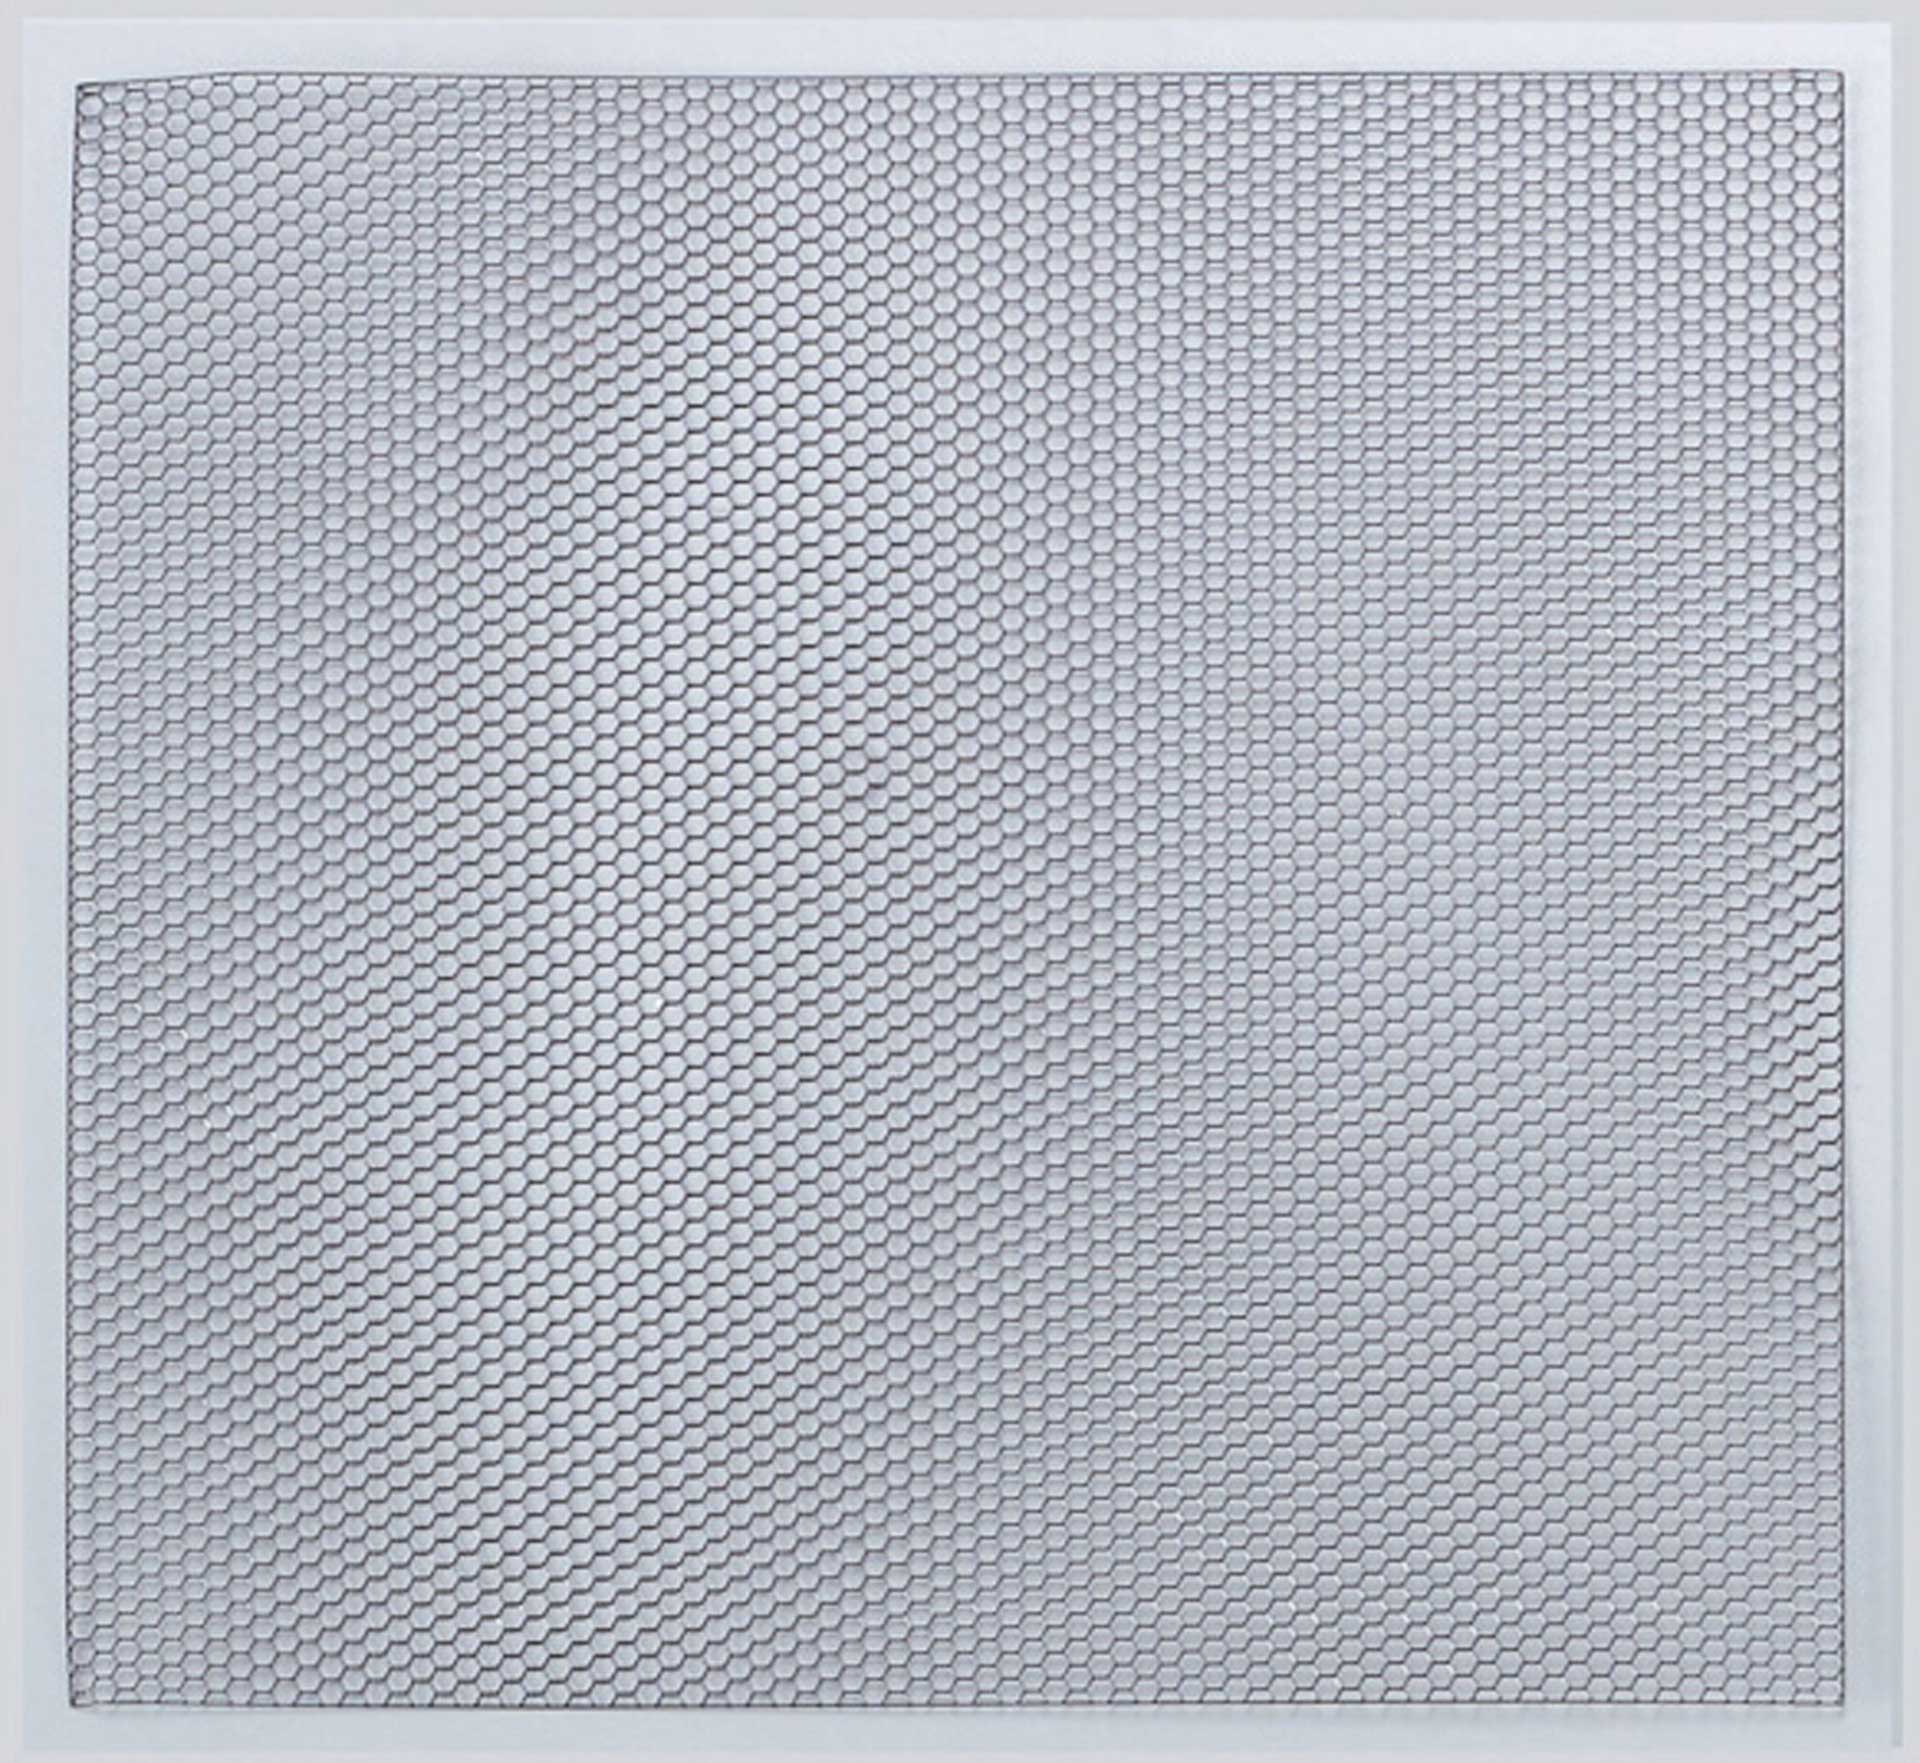 KILLER BODY Stainless steel plate / grid type Hexagon